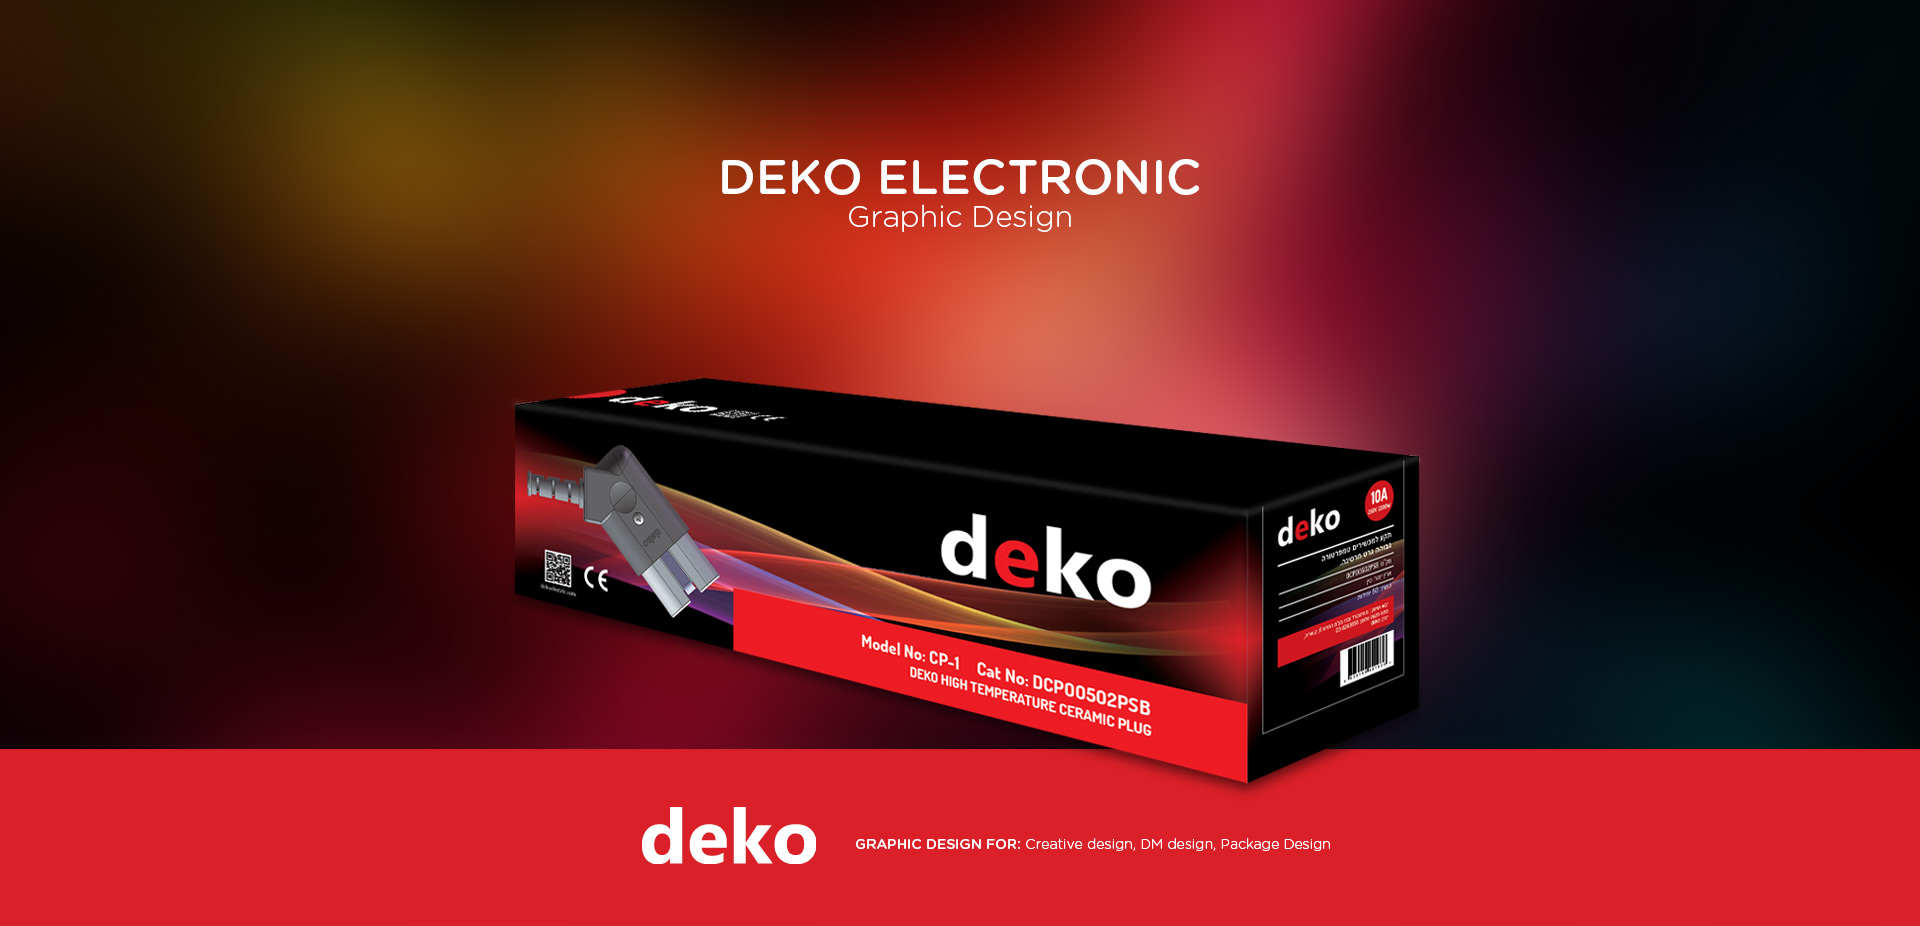  Deko,Ealltech,high-end internet brand constructer